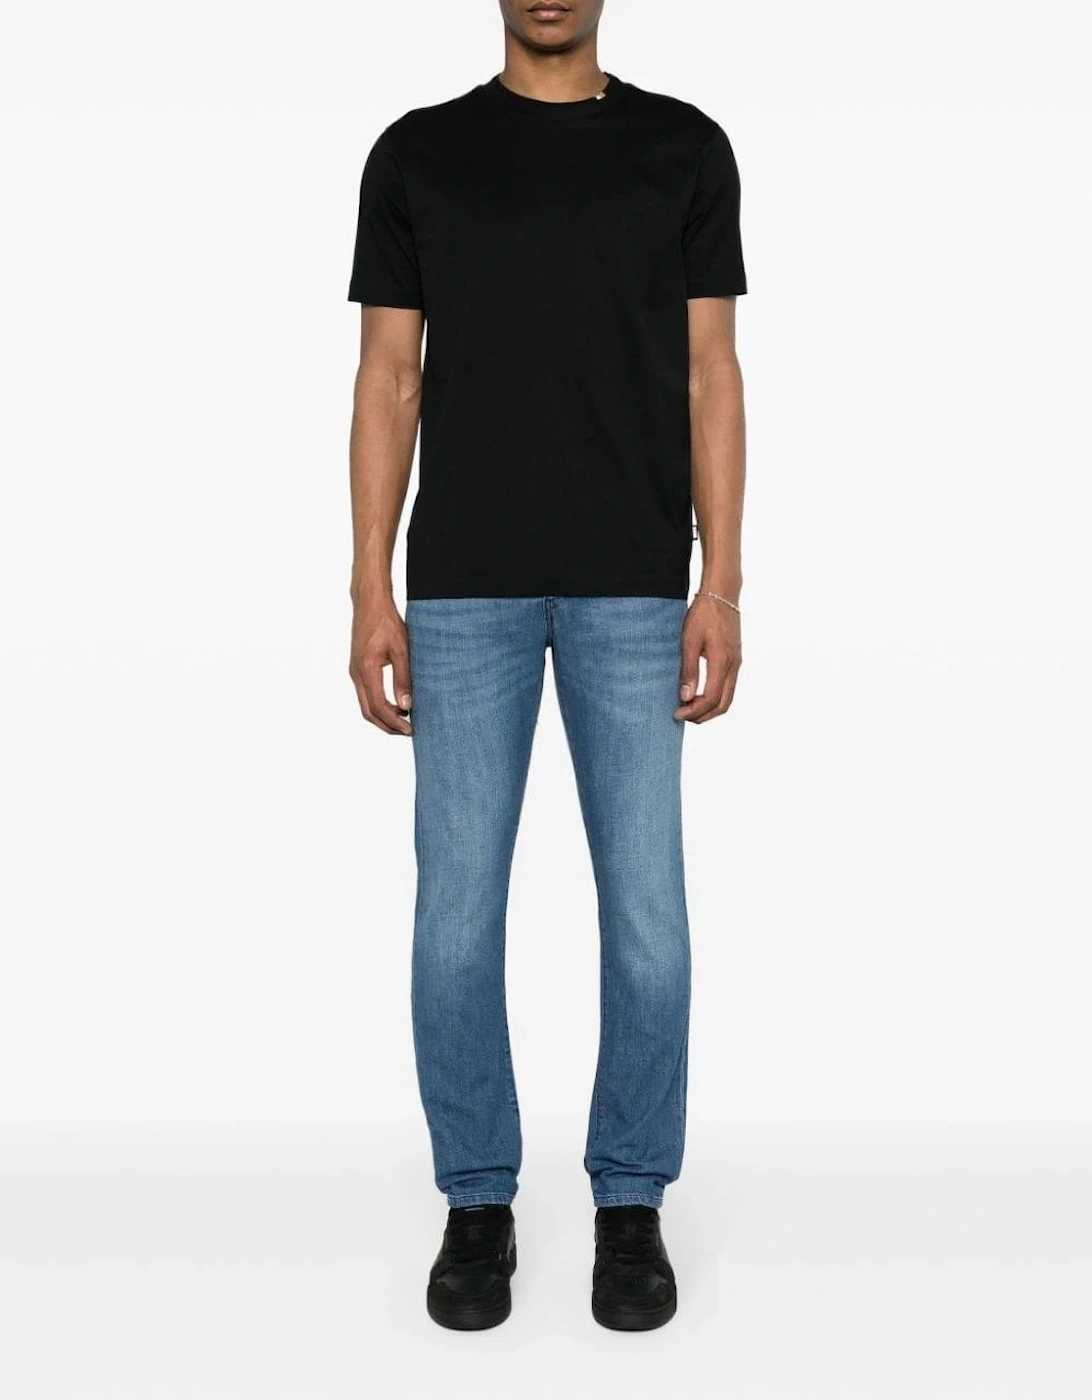 Tiburt 424 T-shirt Black